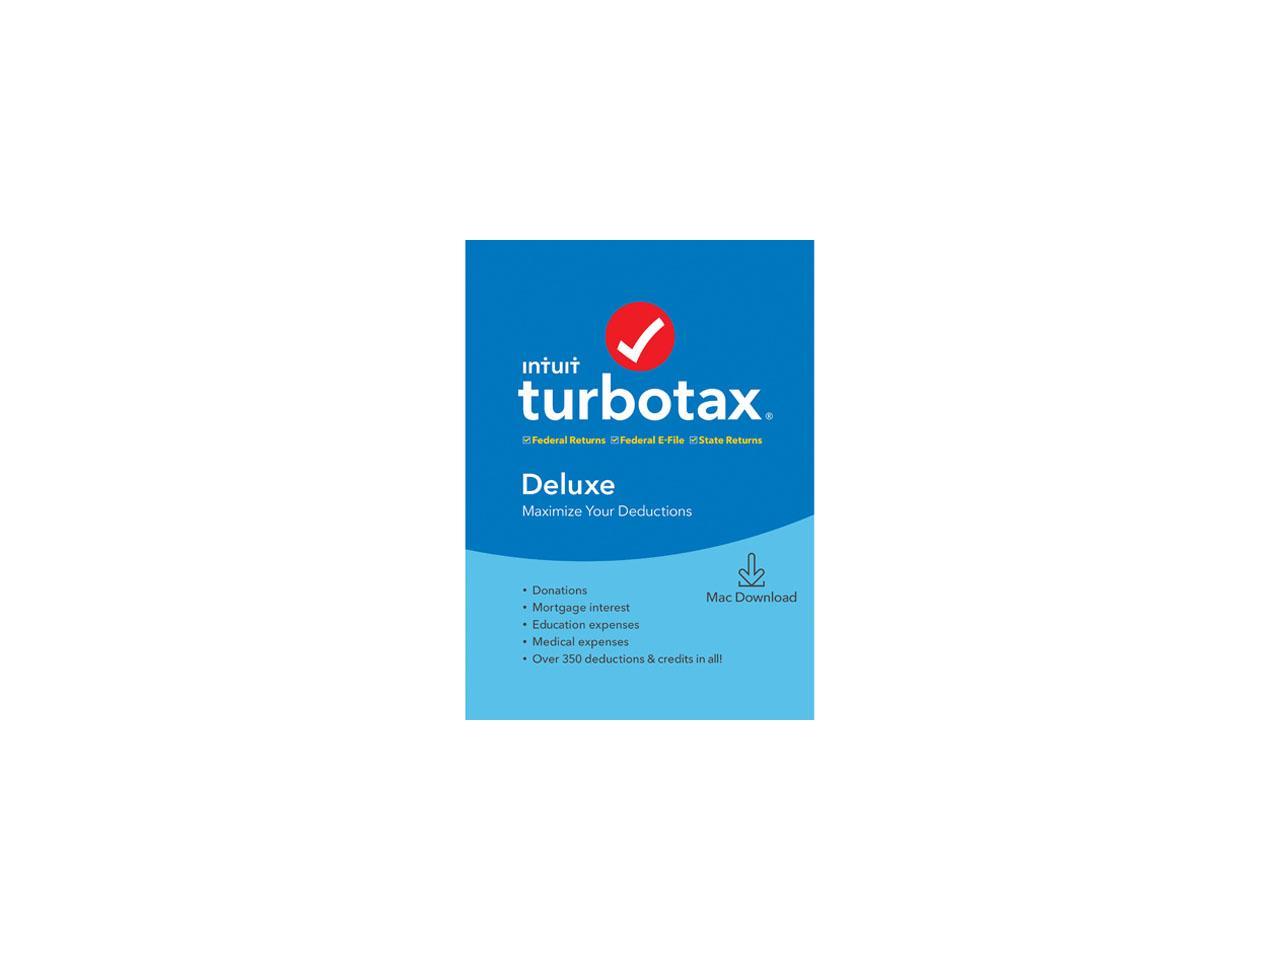 turbotax deluxe mac download newegg